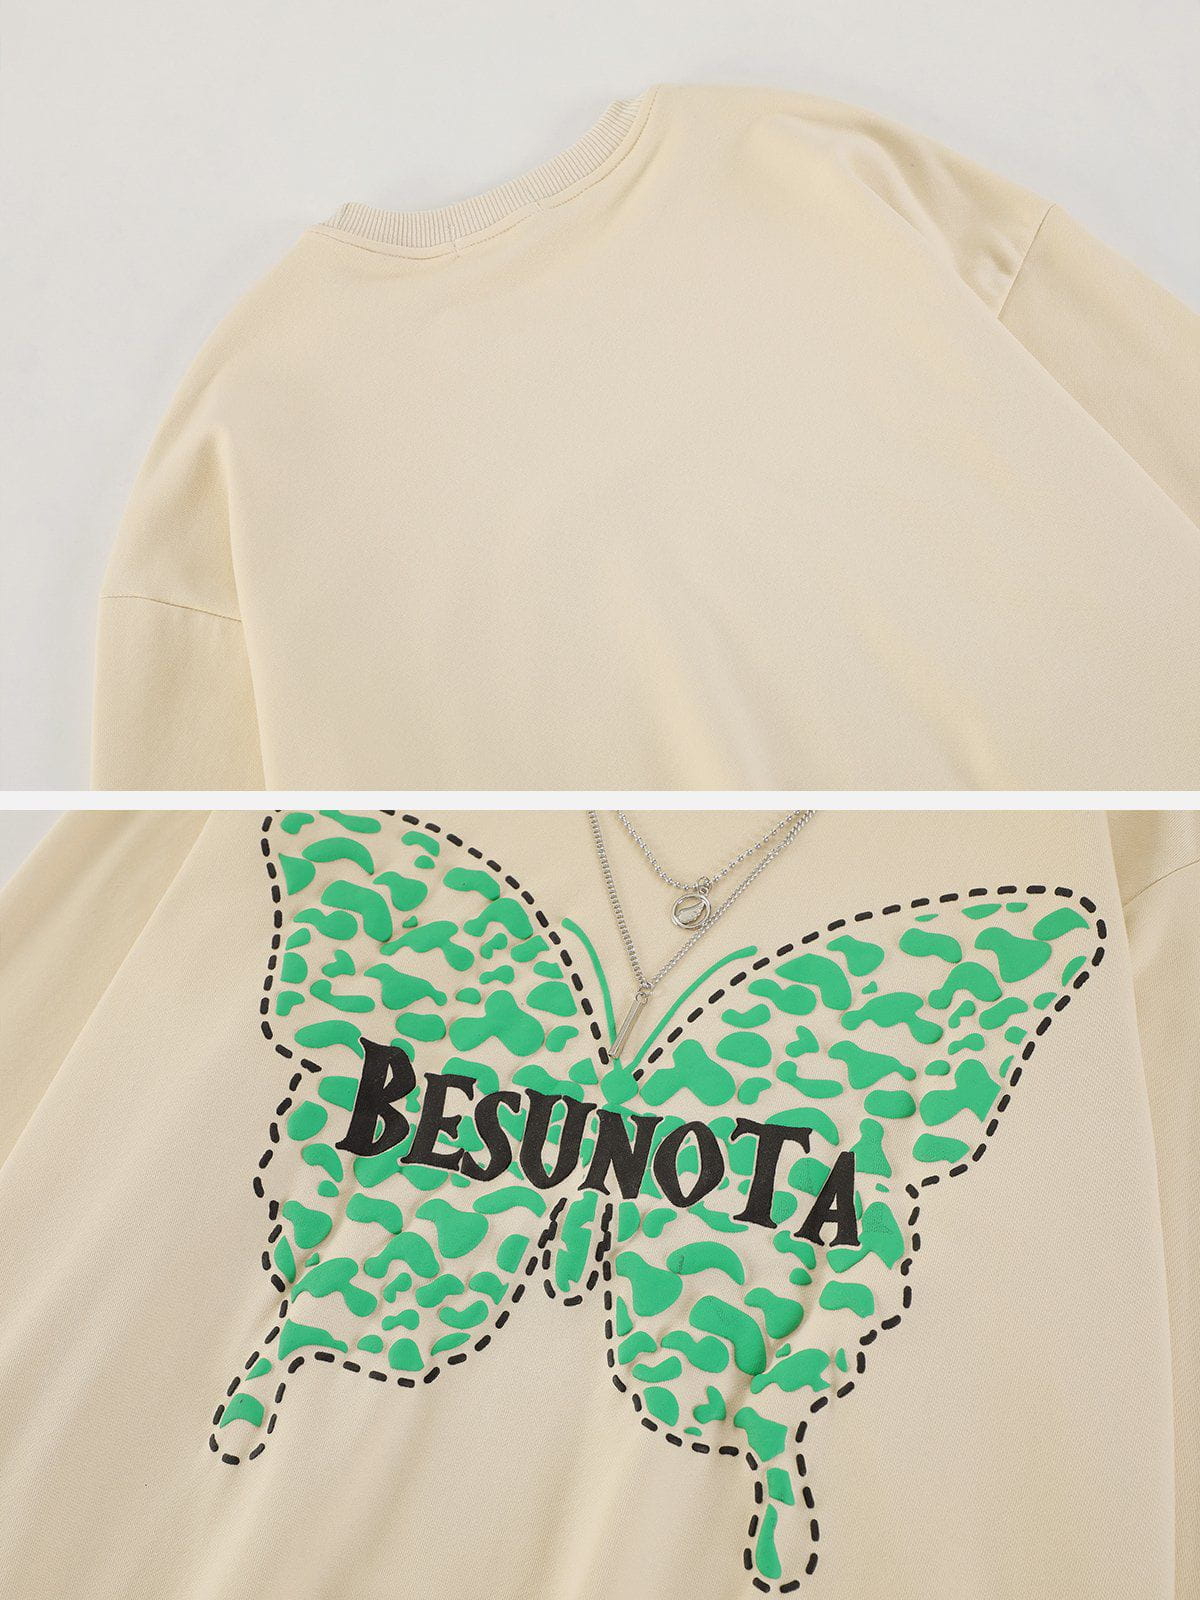 LUXENFY™ - "BESUNOTA" Butterfly Sweatshirt luxenfy.com